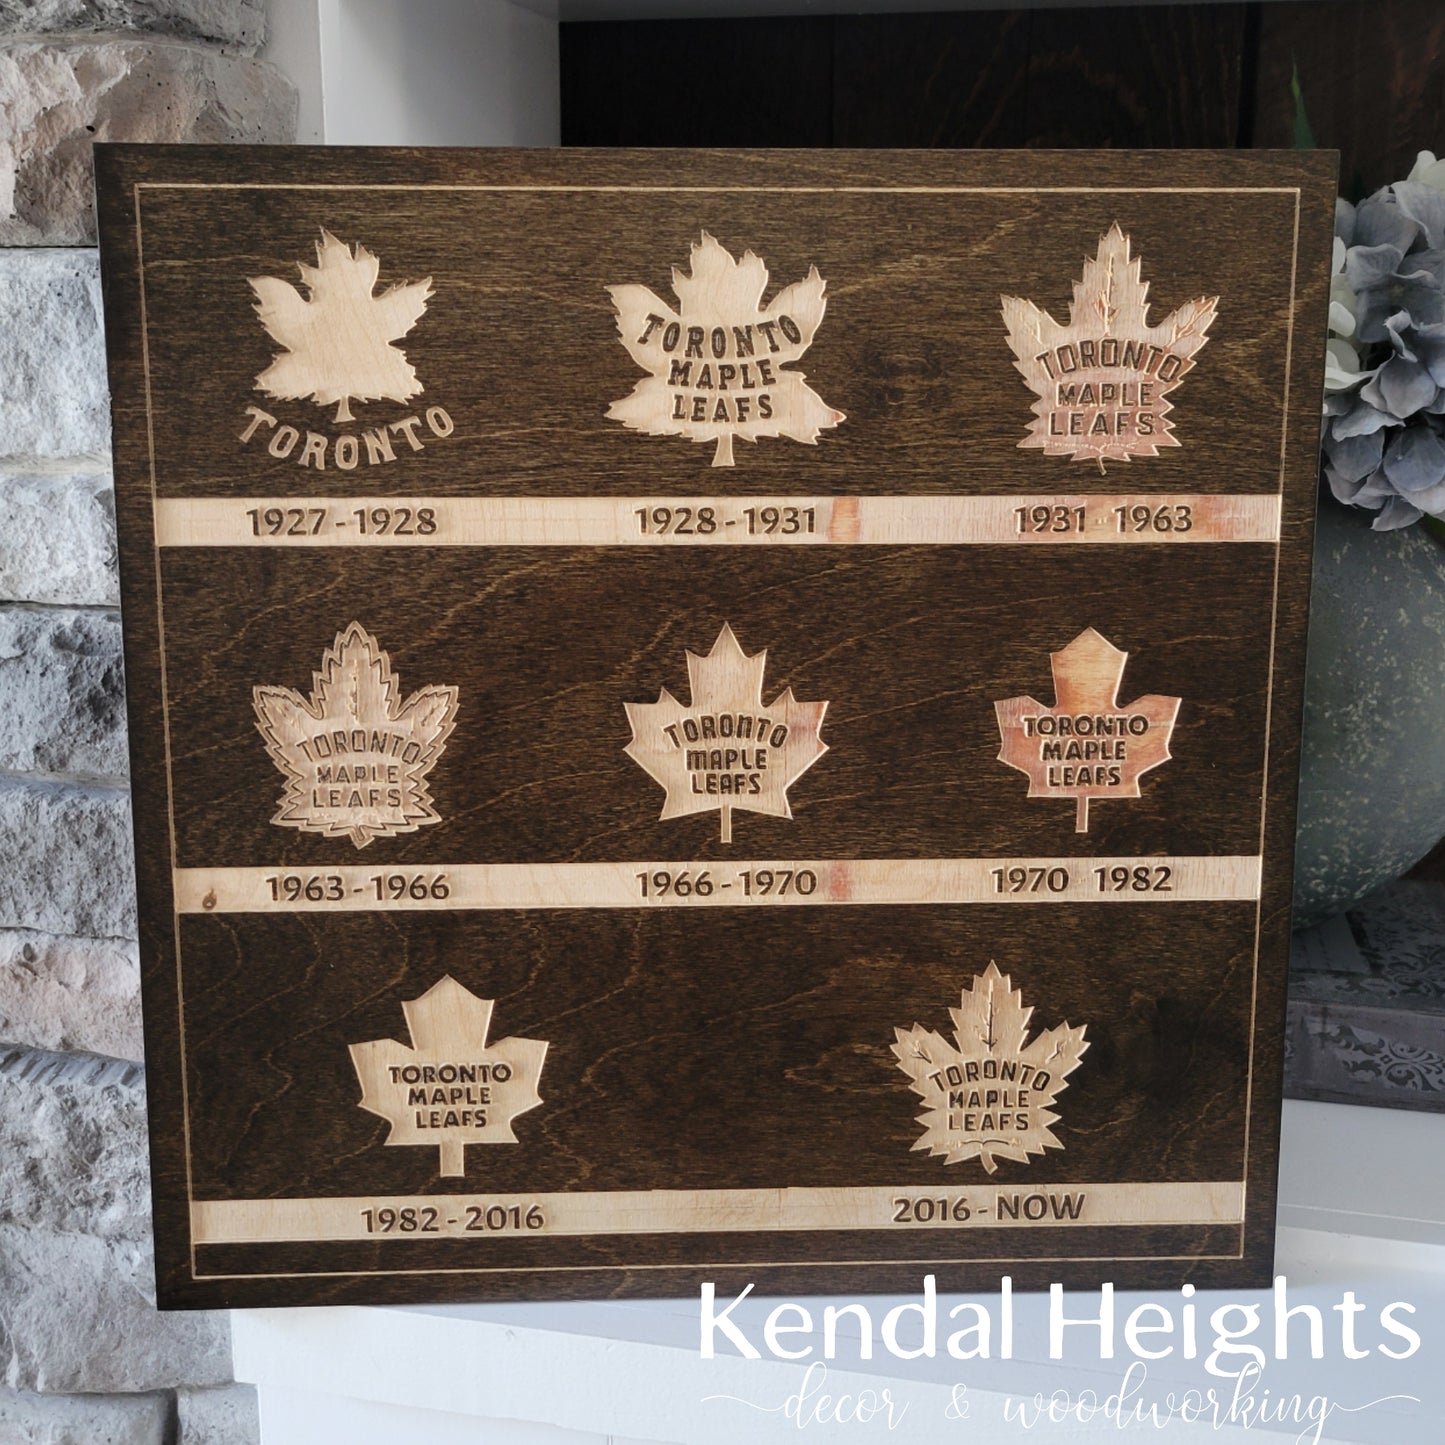 Toronto Maple Leaf - History